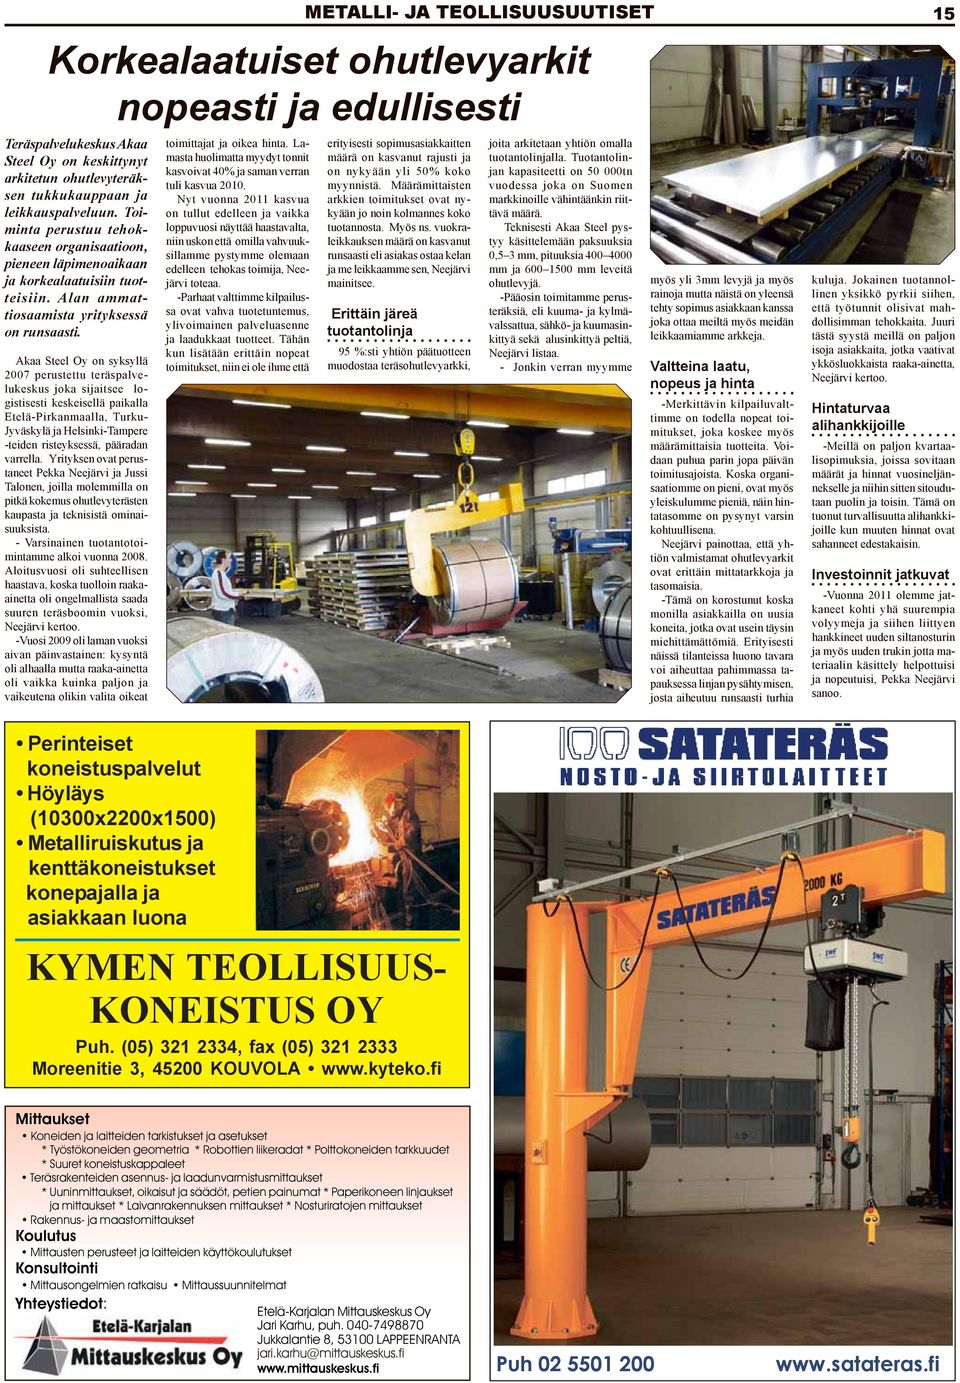 Akaa Steel Oy on syksyllä 2007 perustettu teräspalvelukeskus joka sijaitsee logistisesti keskeisellä paikalla Etelä-Pirkanmaalla, Turku- Jyväskylä ja Helsinki-Tampere -teiden risteyksessä, pääradan